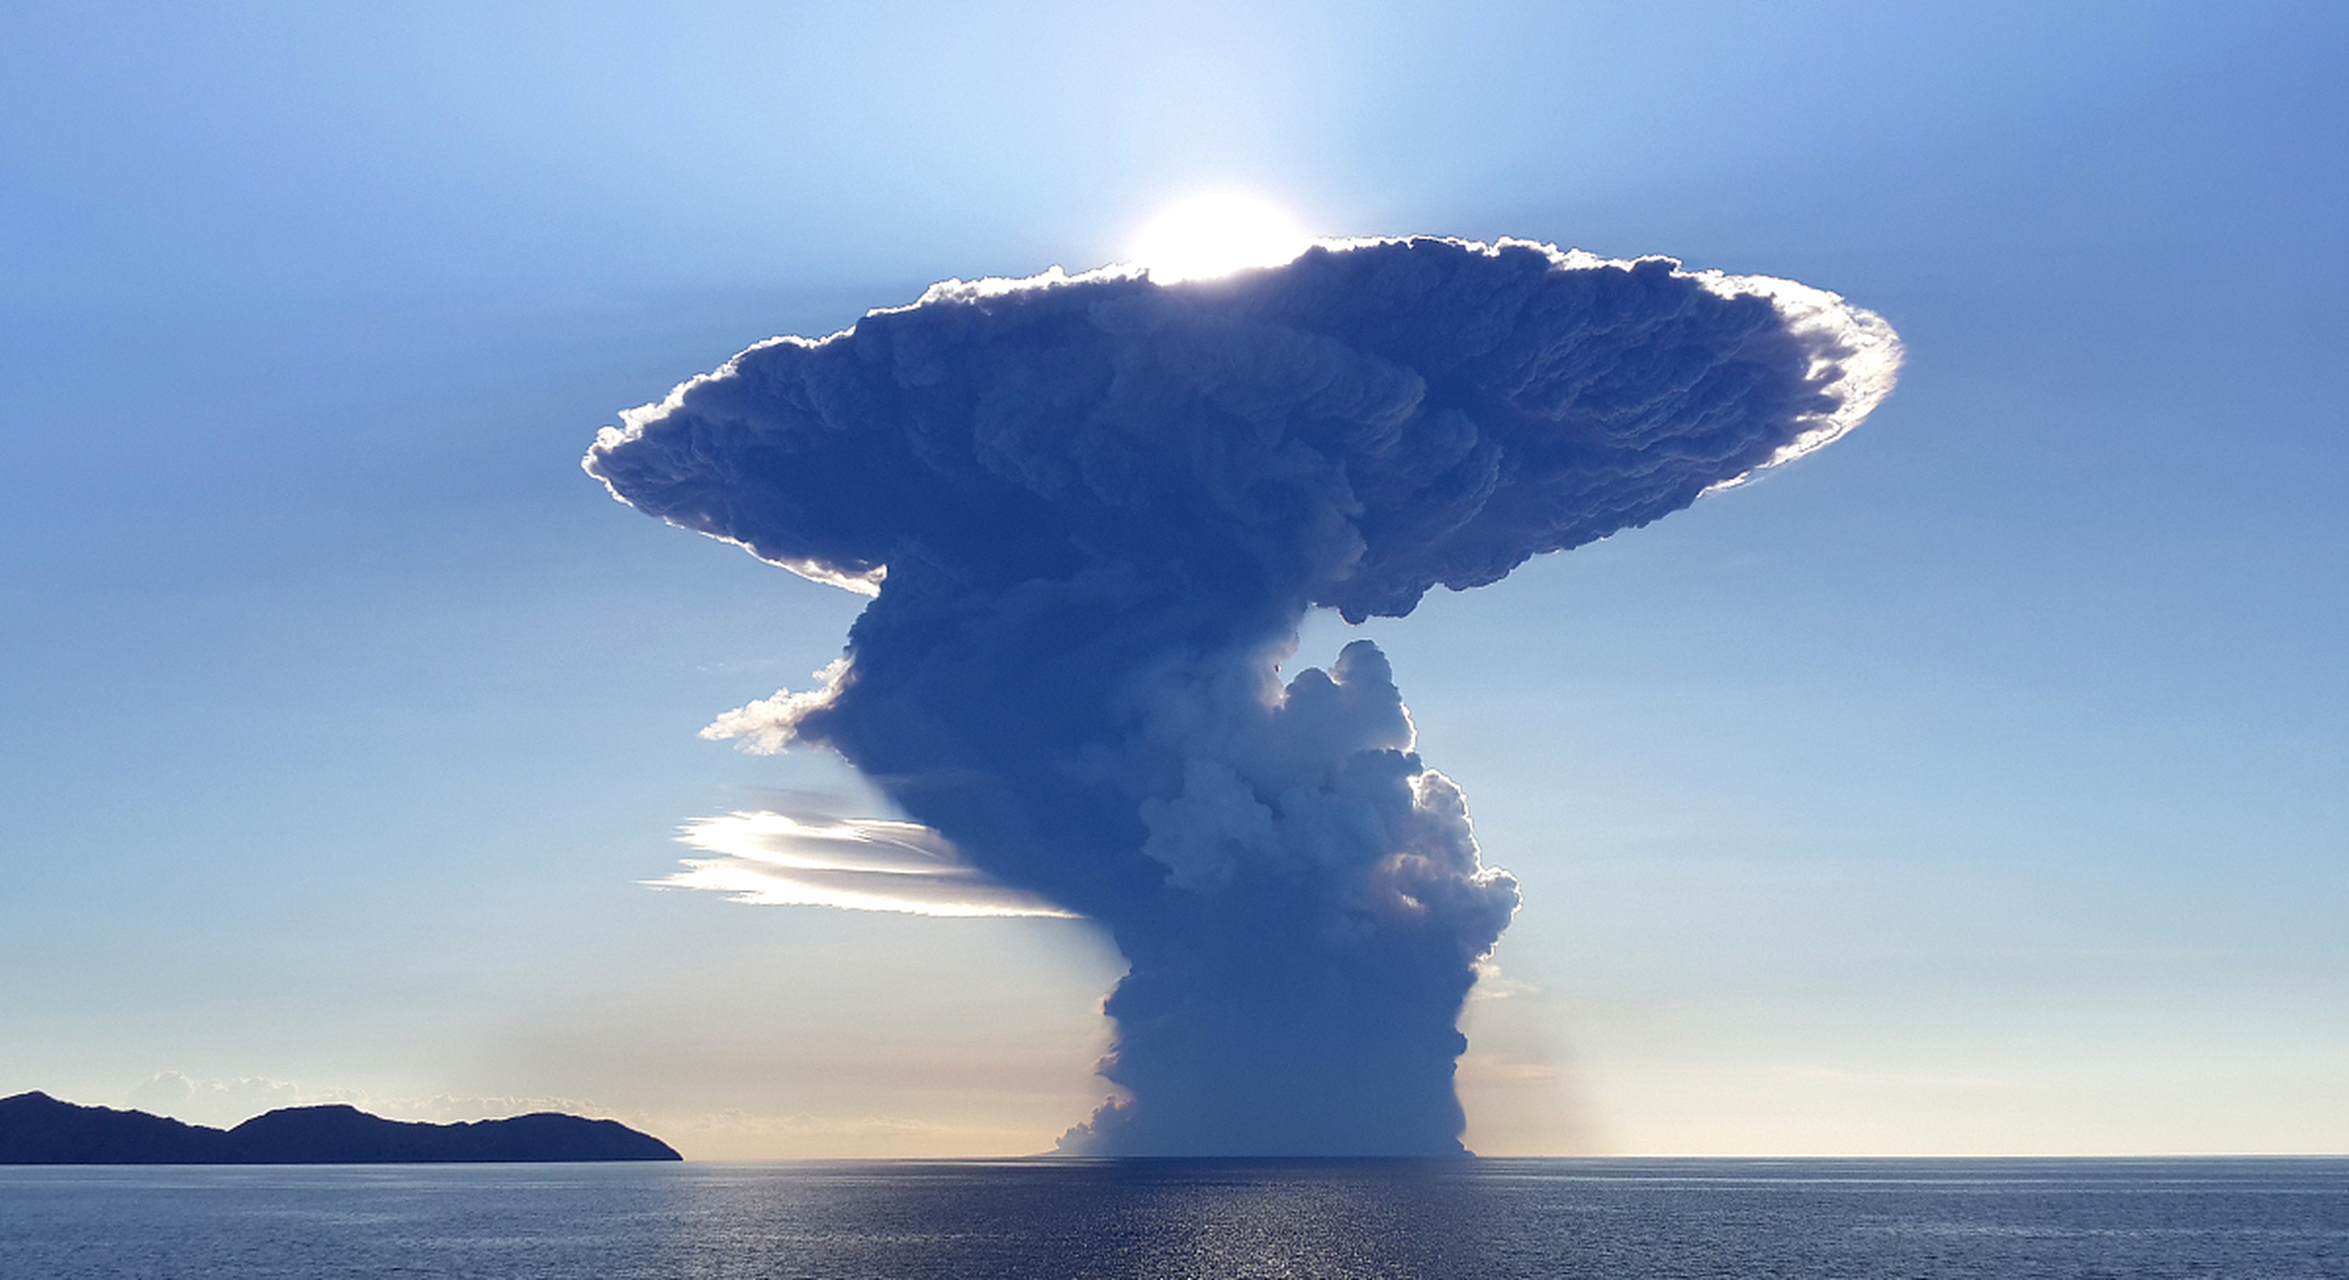 俄罗斯上空现巨型蘑菇云引恐慌,有人担心是核爆炸!